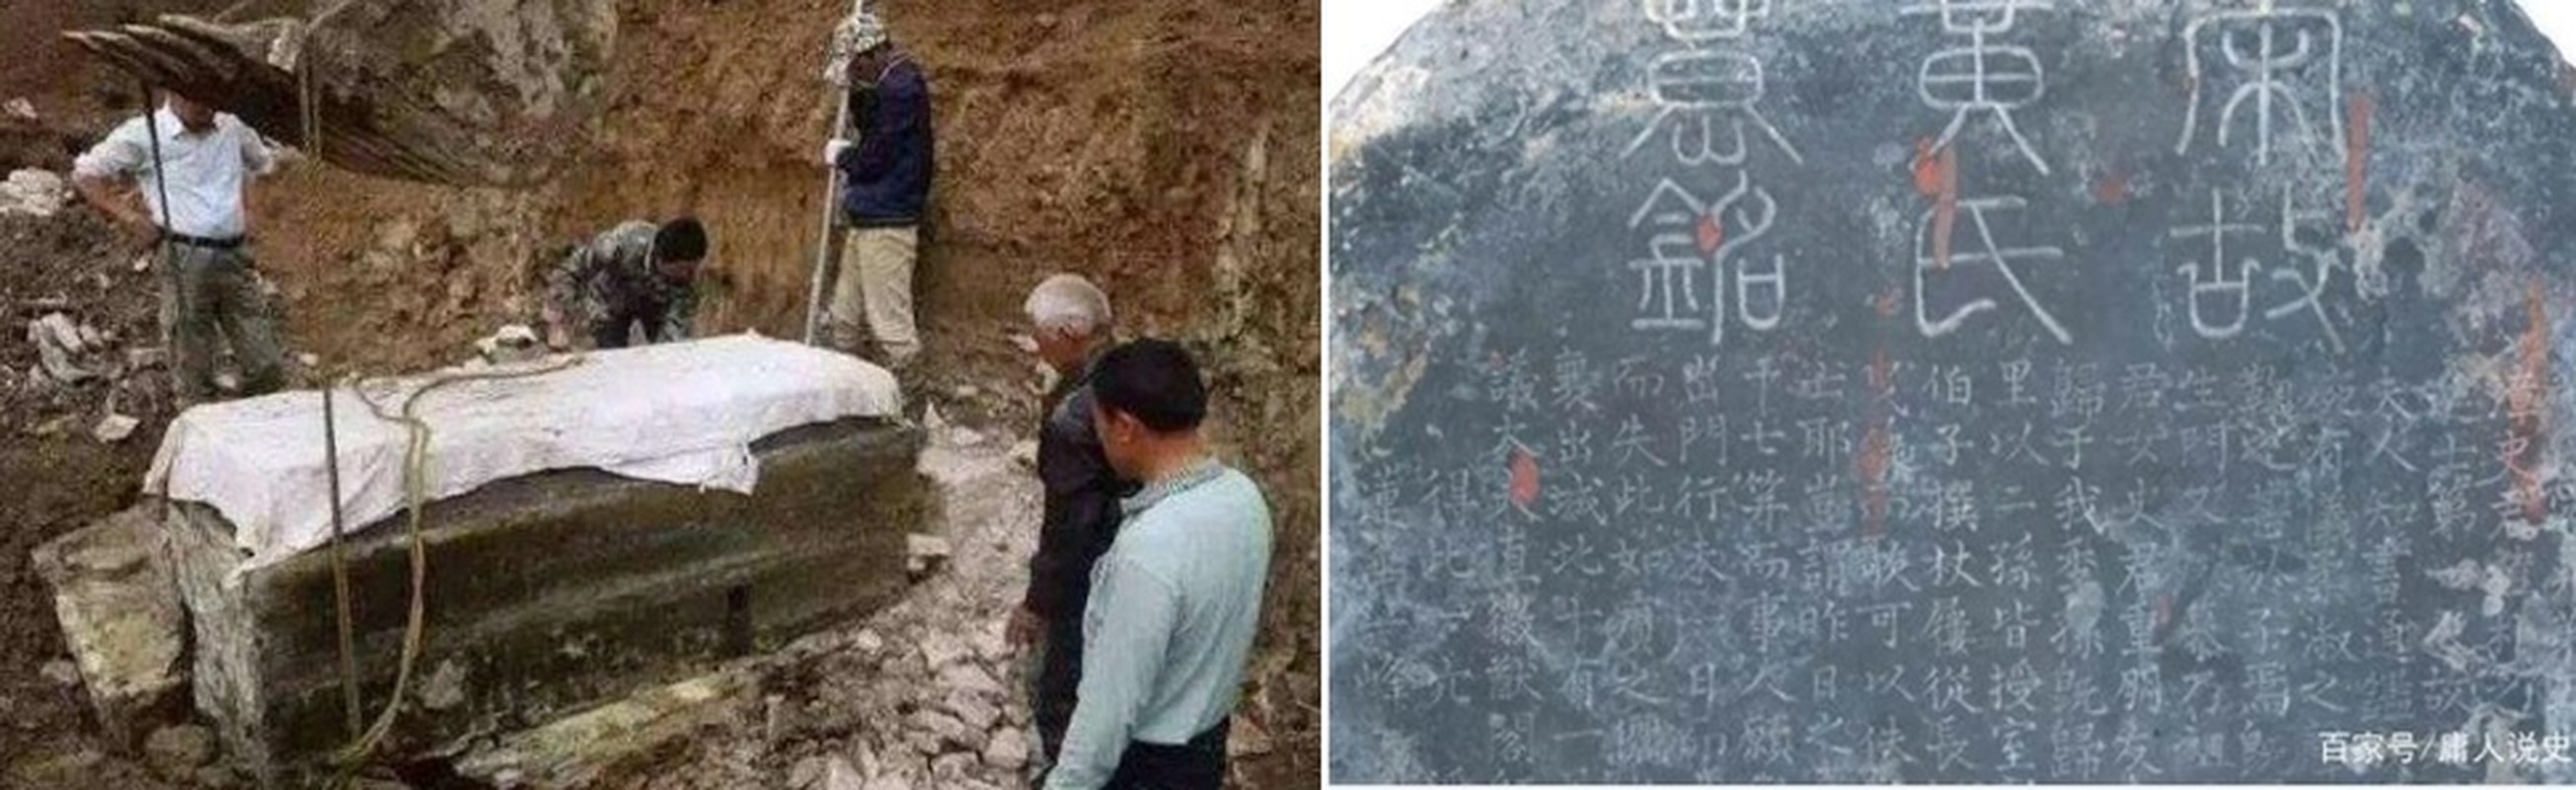             Mở mộ cổ, chuyên gia tái mặt thấy 'mỹ nhân' mặc 354 lớp y phục    